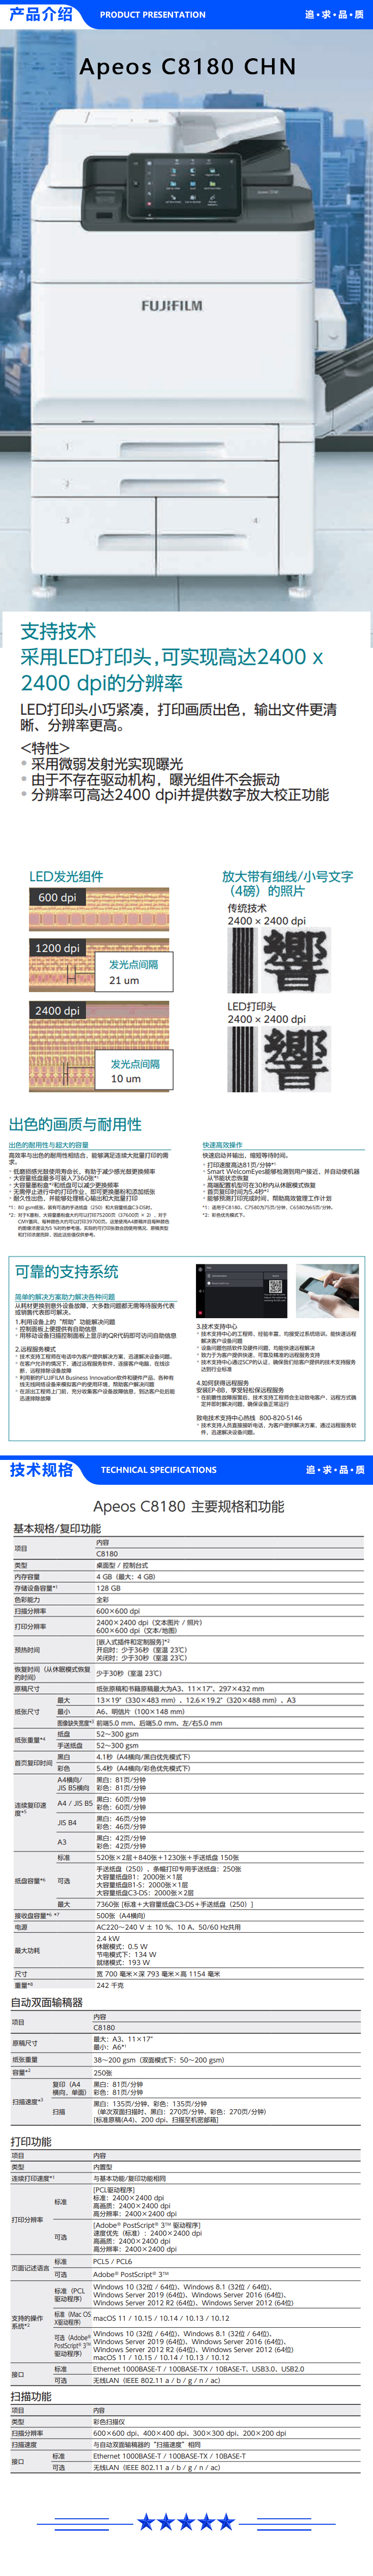 富士胶片 FUJIFILM Apeos C6580 CHN A3彩色数码复合机 65页 (复印+打印+扫描+输稿器+四纸盒) 2.jpg